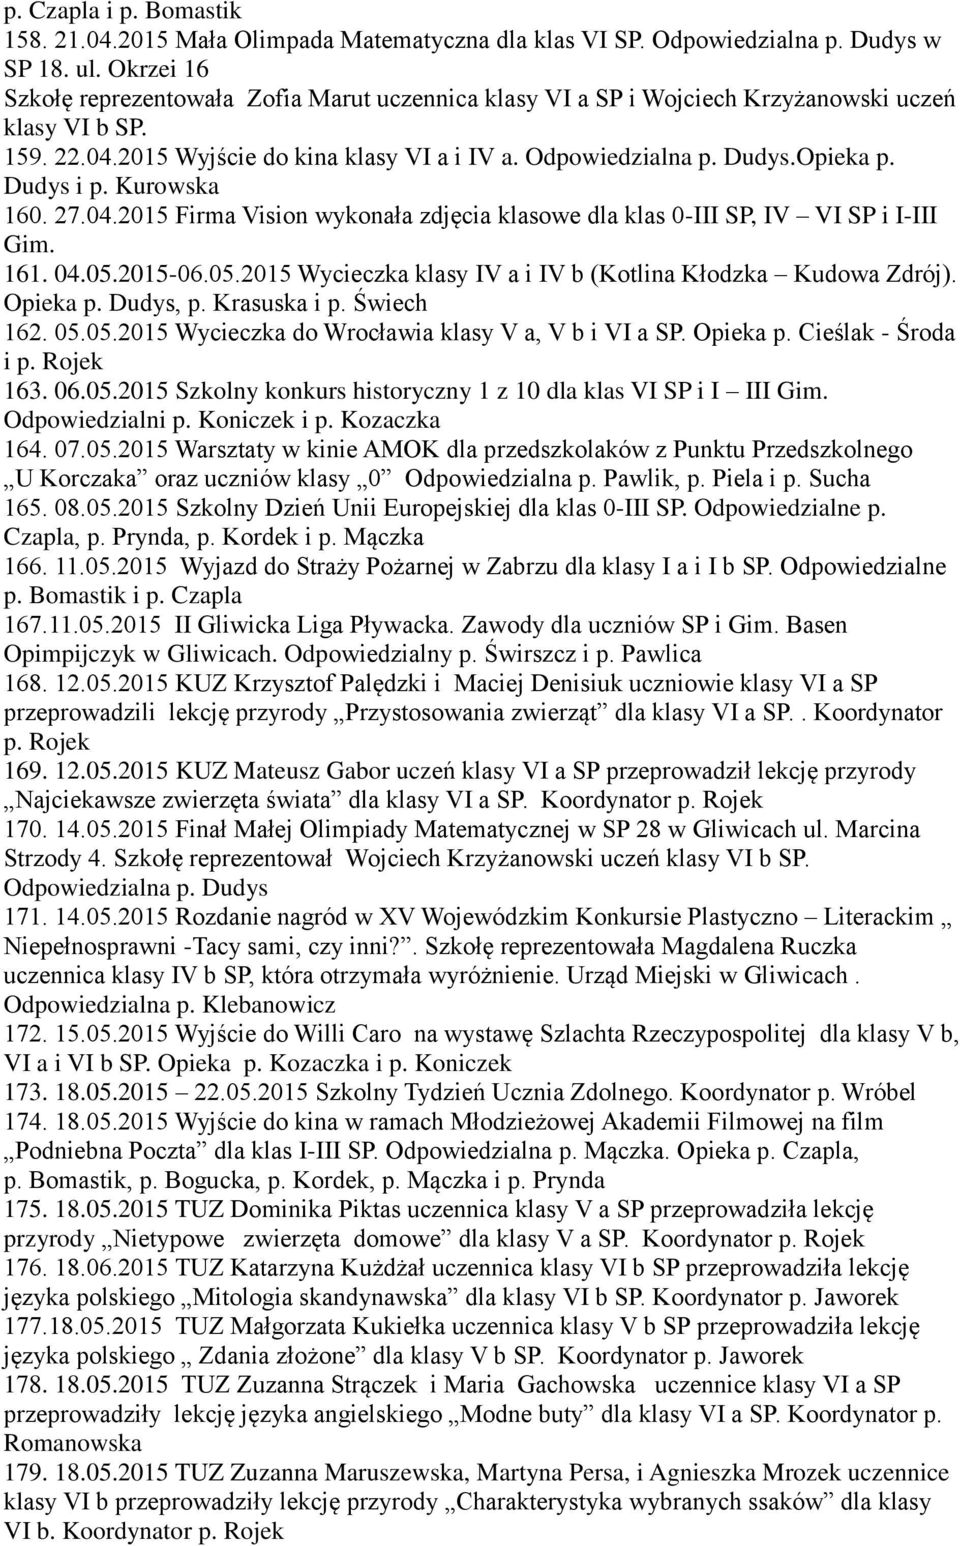 Dudys i p. Kurowska 160. 27.04.2015 Firma Vision wykonała zdjęcia klasowe dla klas 0-III SP, IV VI SP i I-III Gim. 161. 04.05.2015-06.05.2015 Wycieczka klasy IV a i IV b (Kotlina Kłodzka Kudowa Zdrój).